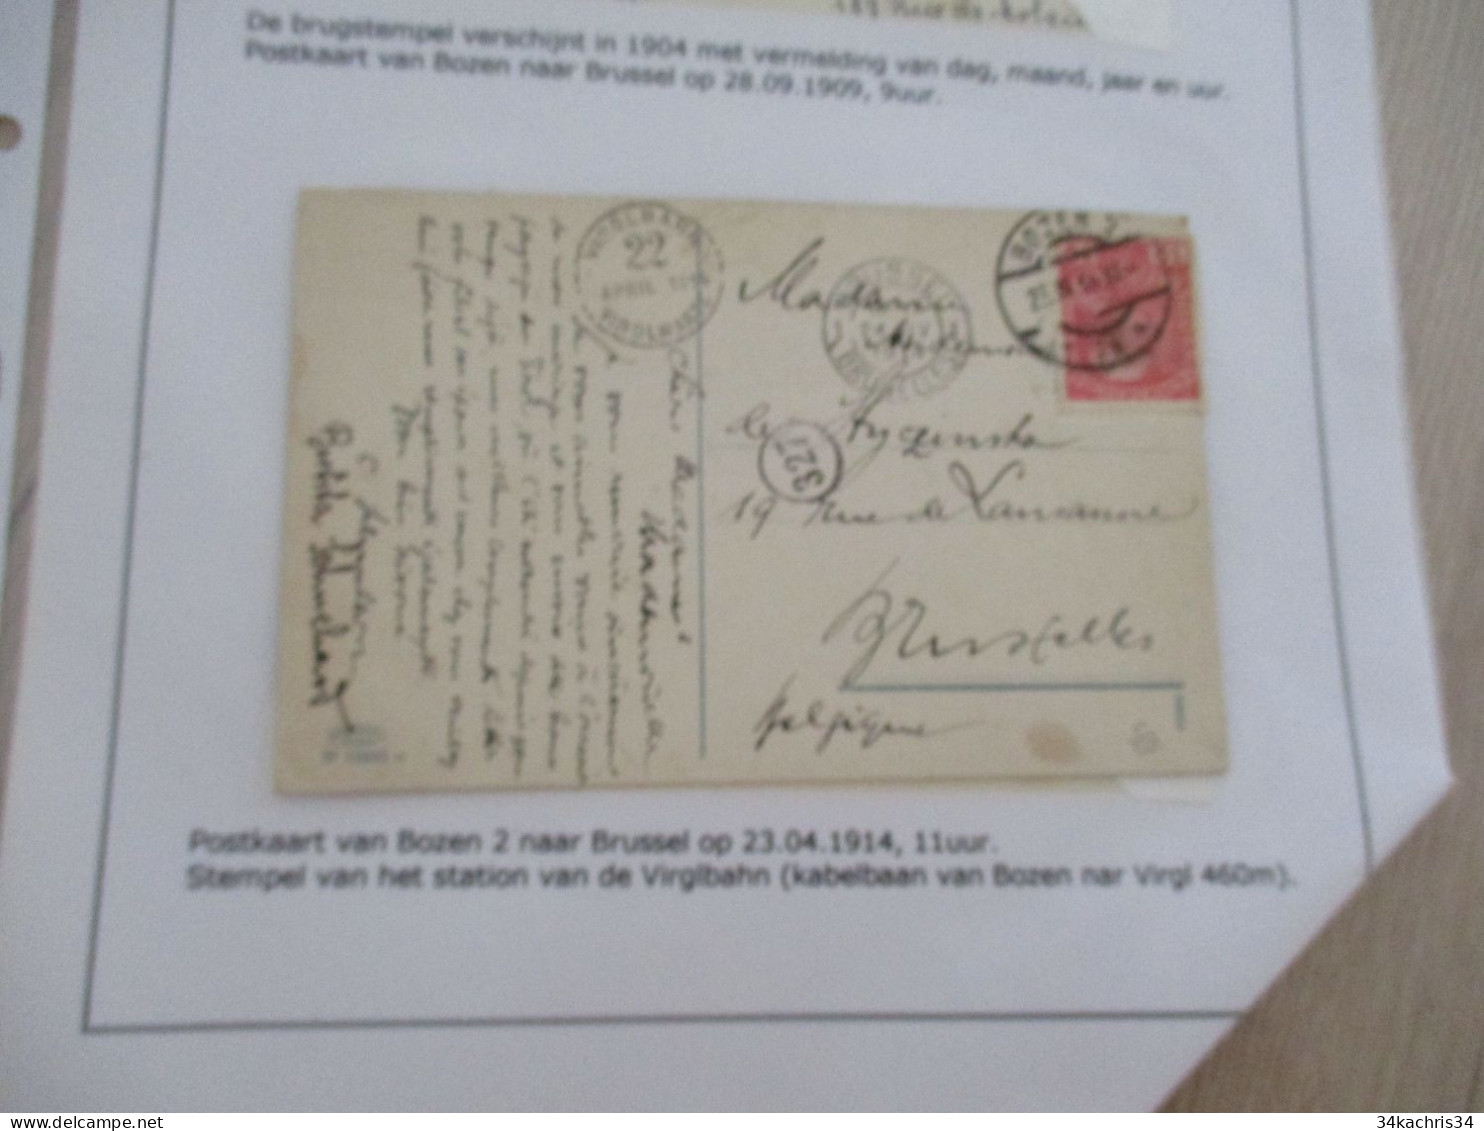 Collection Spécialisée ITALIE/Autriche K.u.K. Monarchie CPA Bozen 2 Vers Brussel 23/04/1914 - Cartas & Documentos